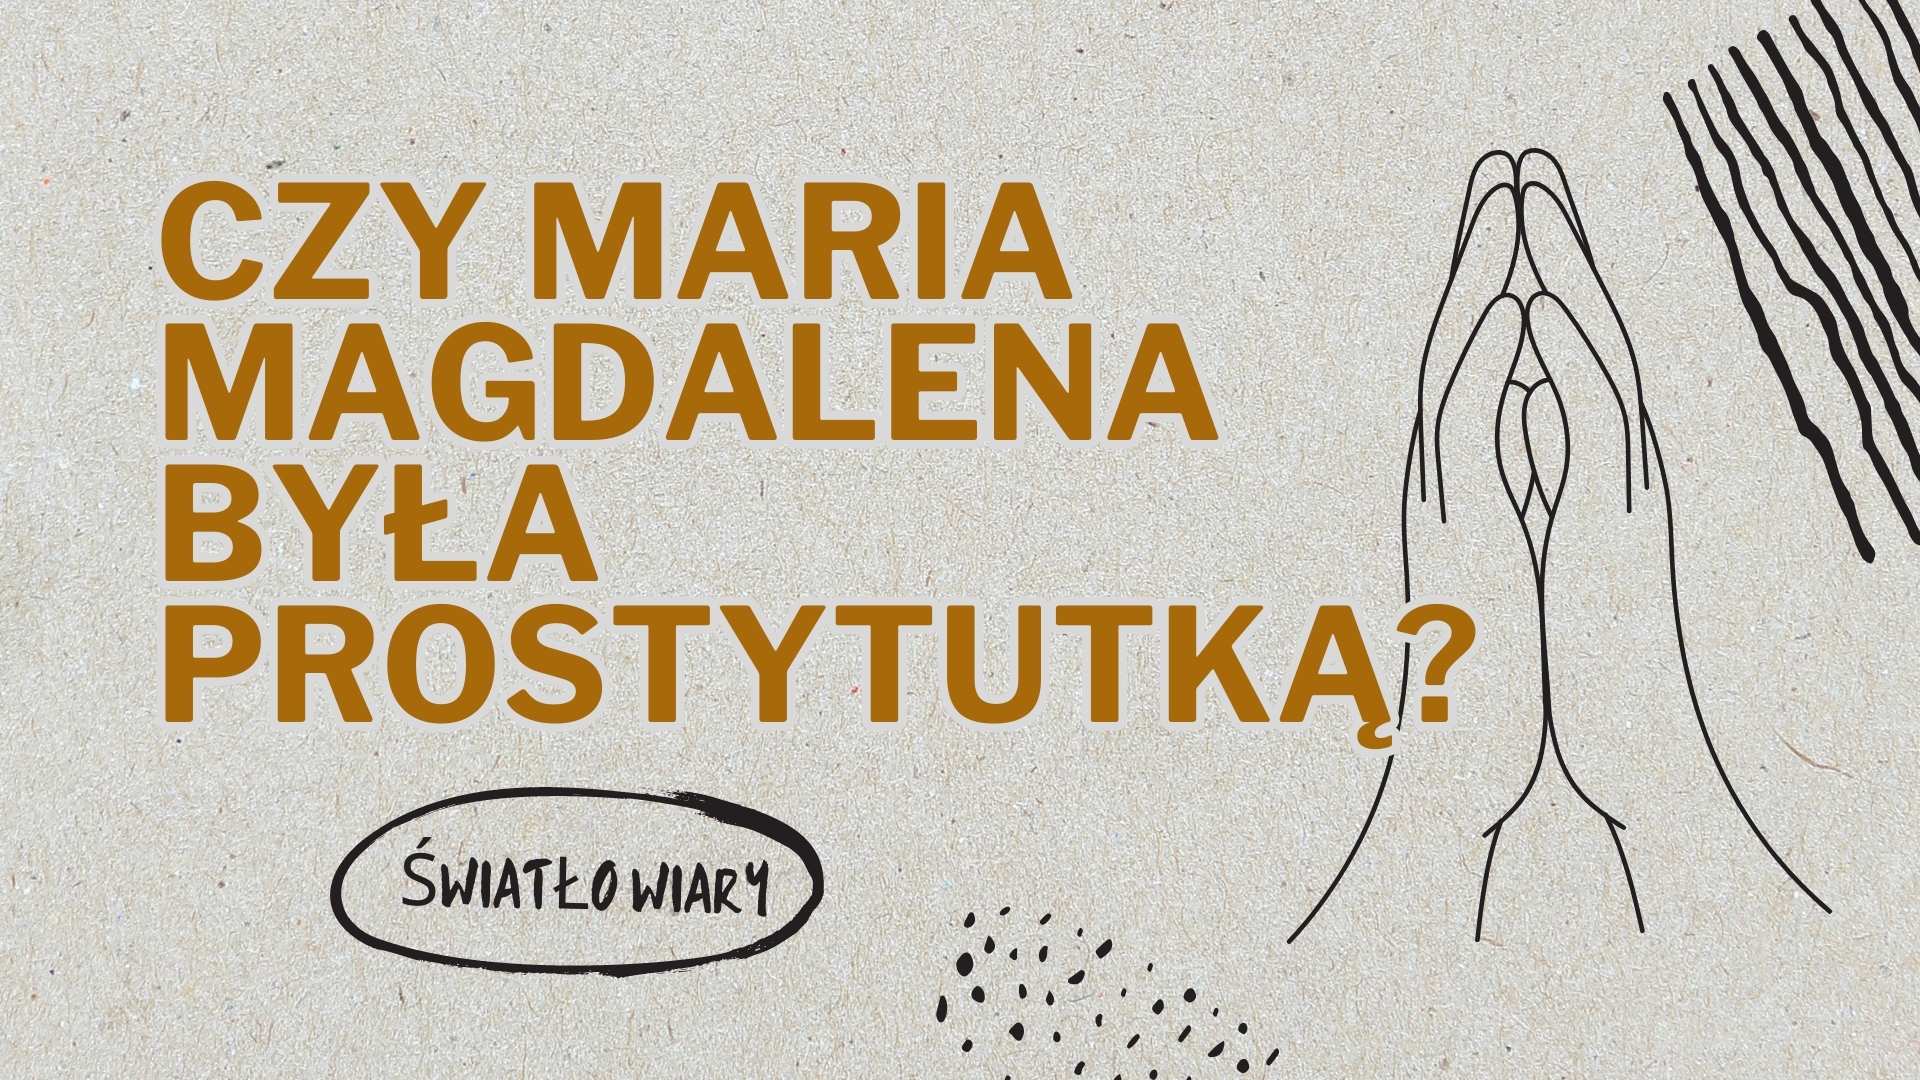 Czy Maria Magdalena była prostytutką?